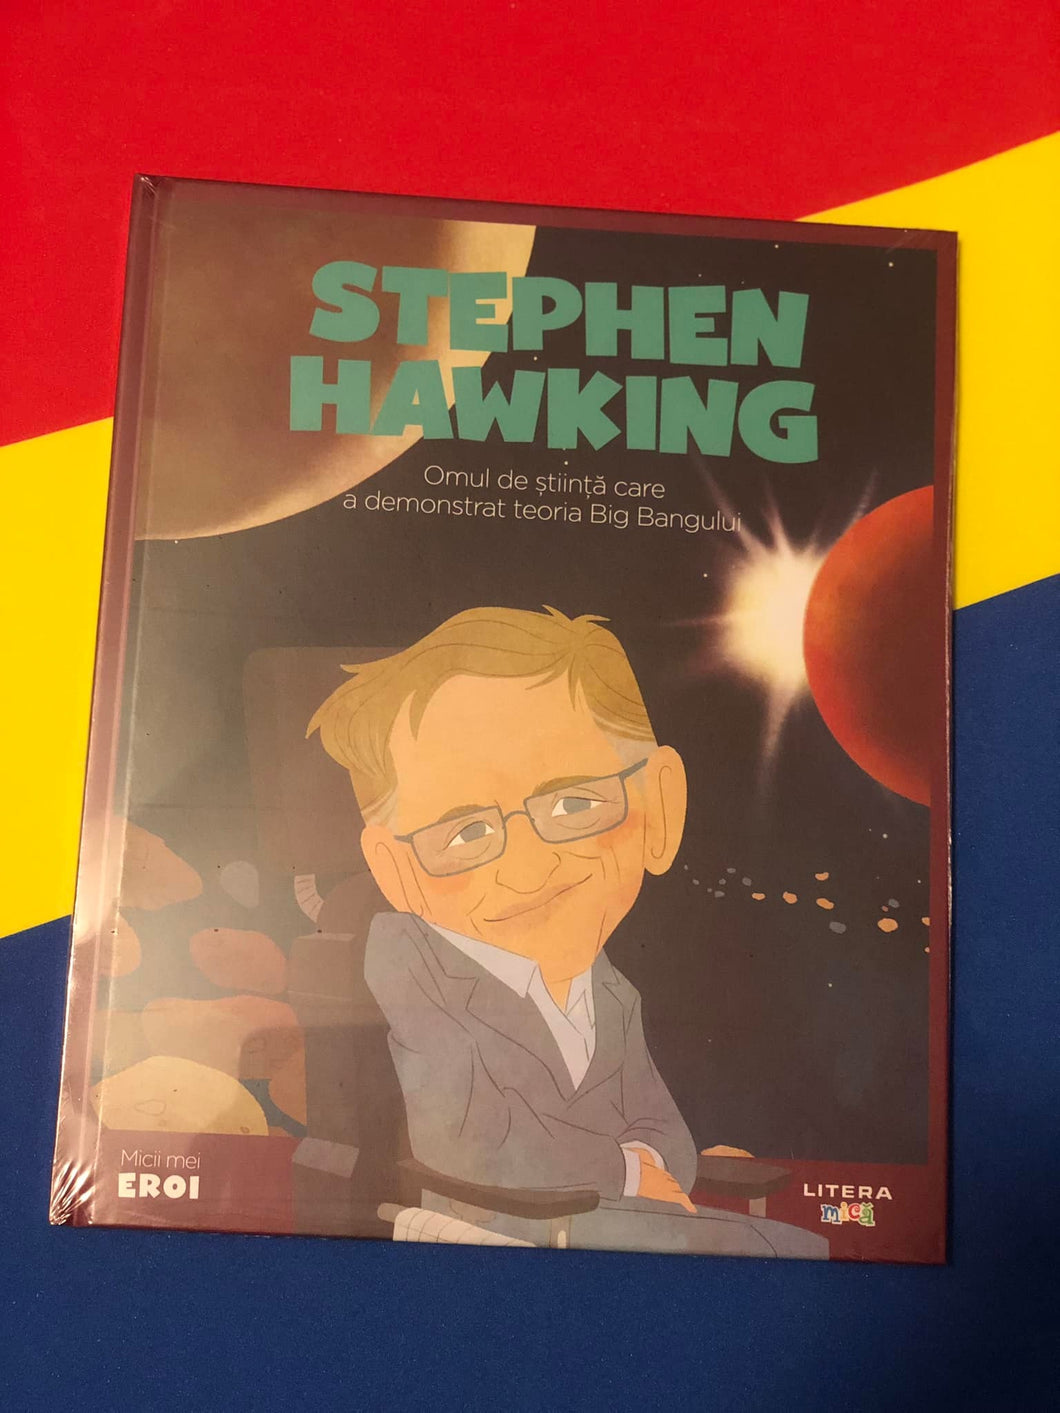 STEPHEN HAWKING omul de stiinta care a demonstrat teoria big bangului